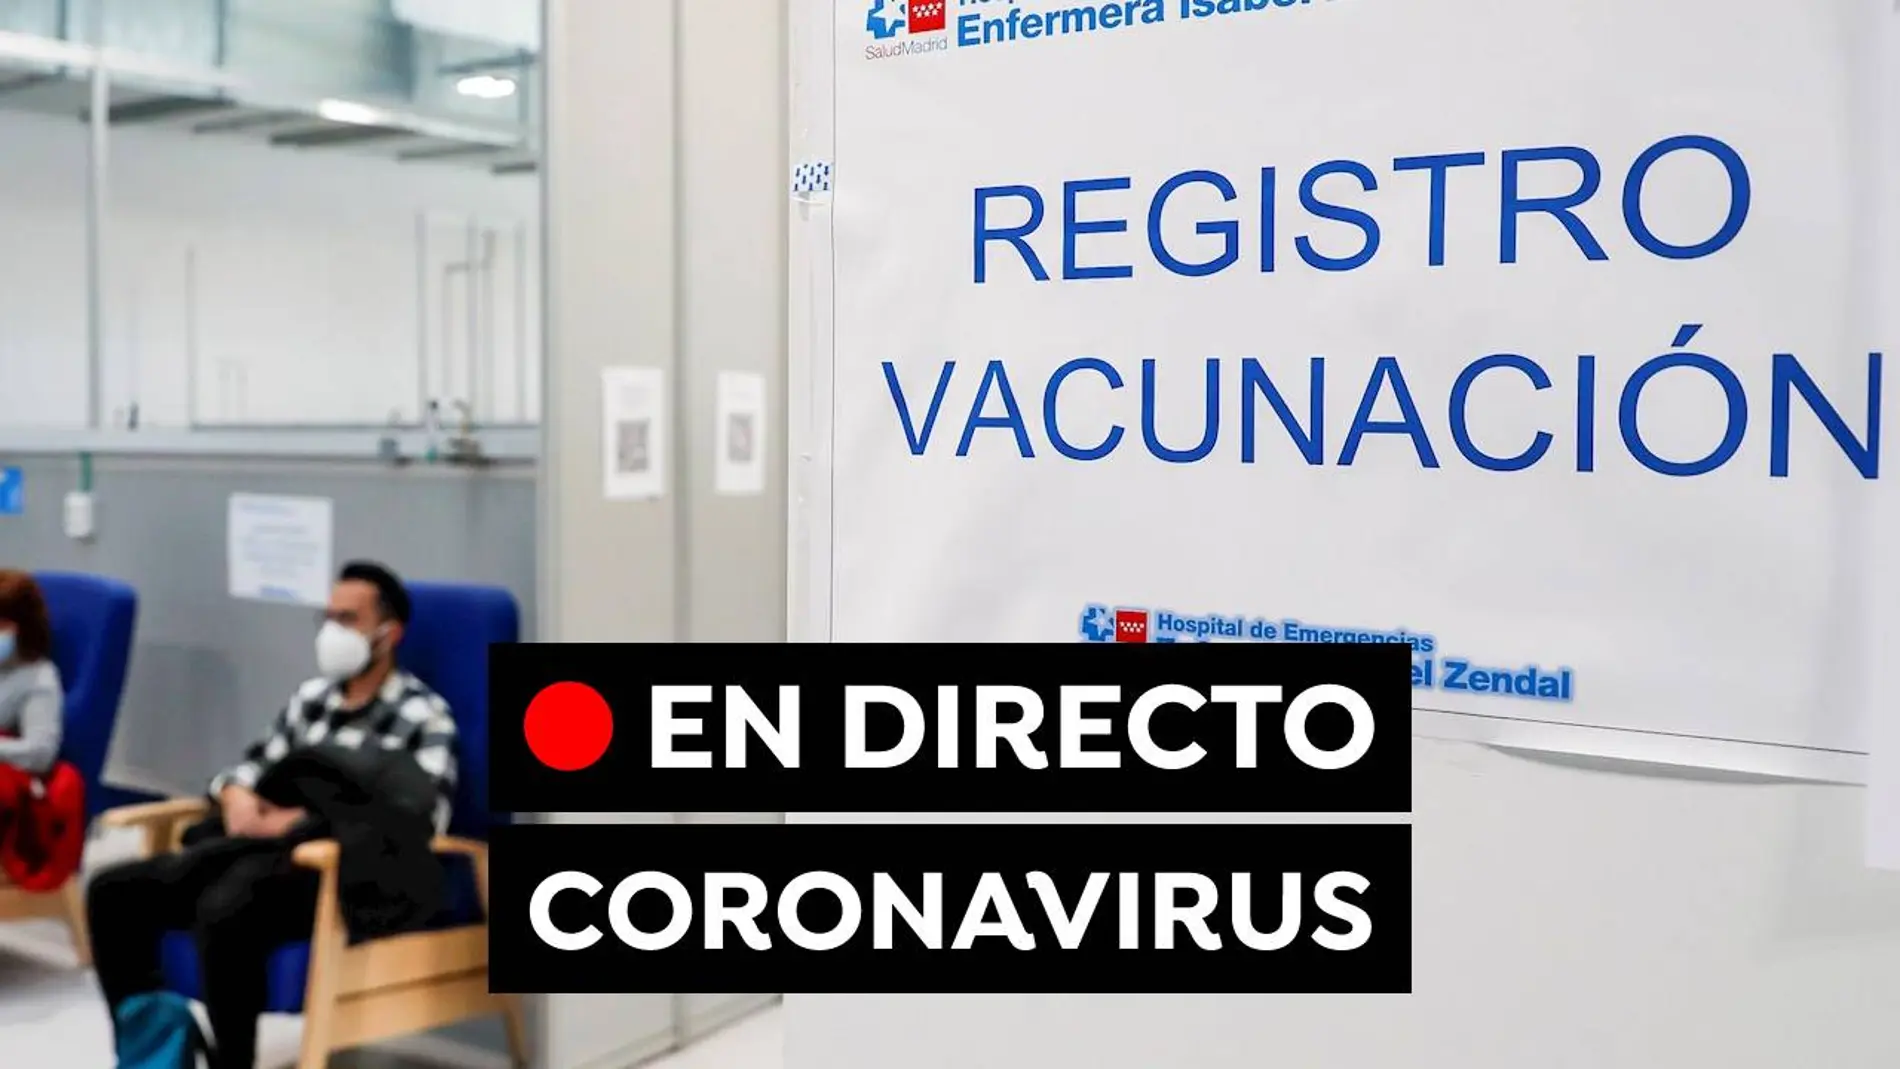 COVID-19: Última hora de los contagios, restricciones y avance del coronavirus, en directo